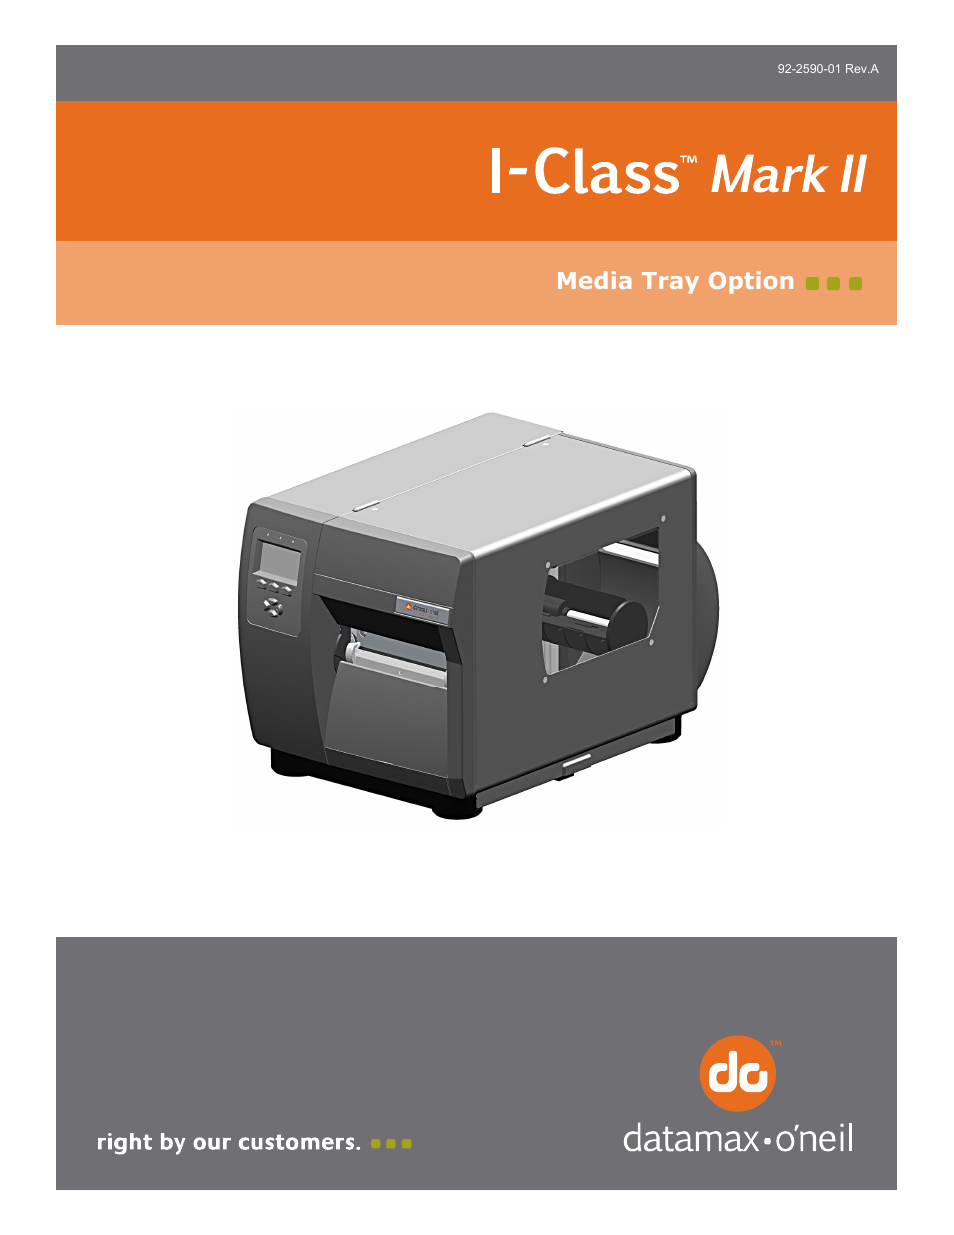 I-Class Mark II Media Tray Option